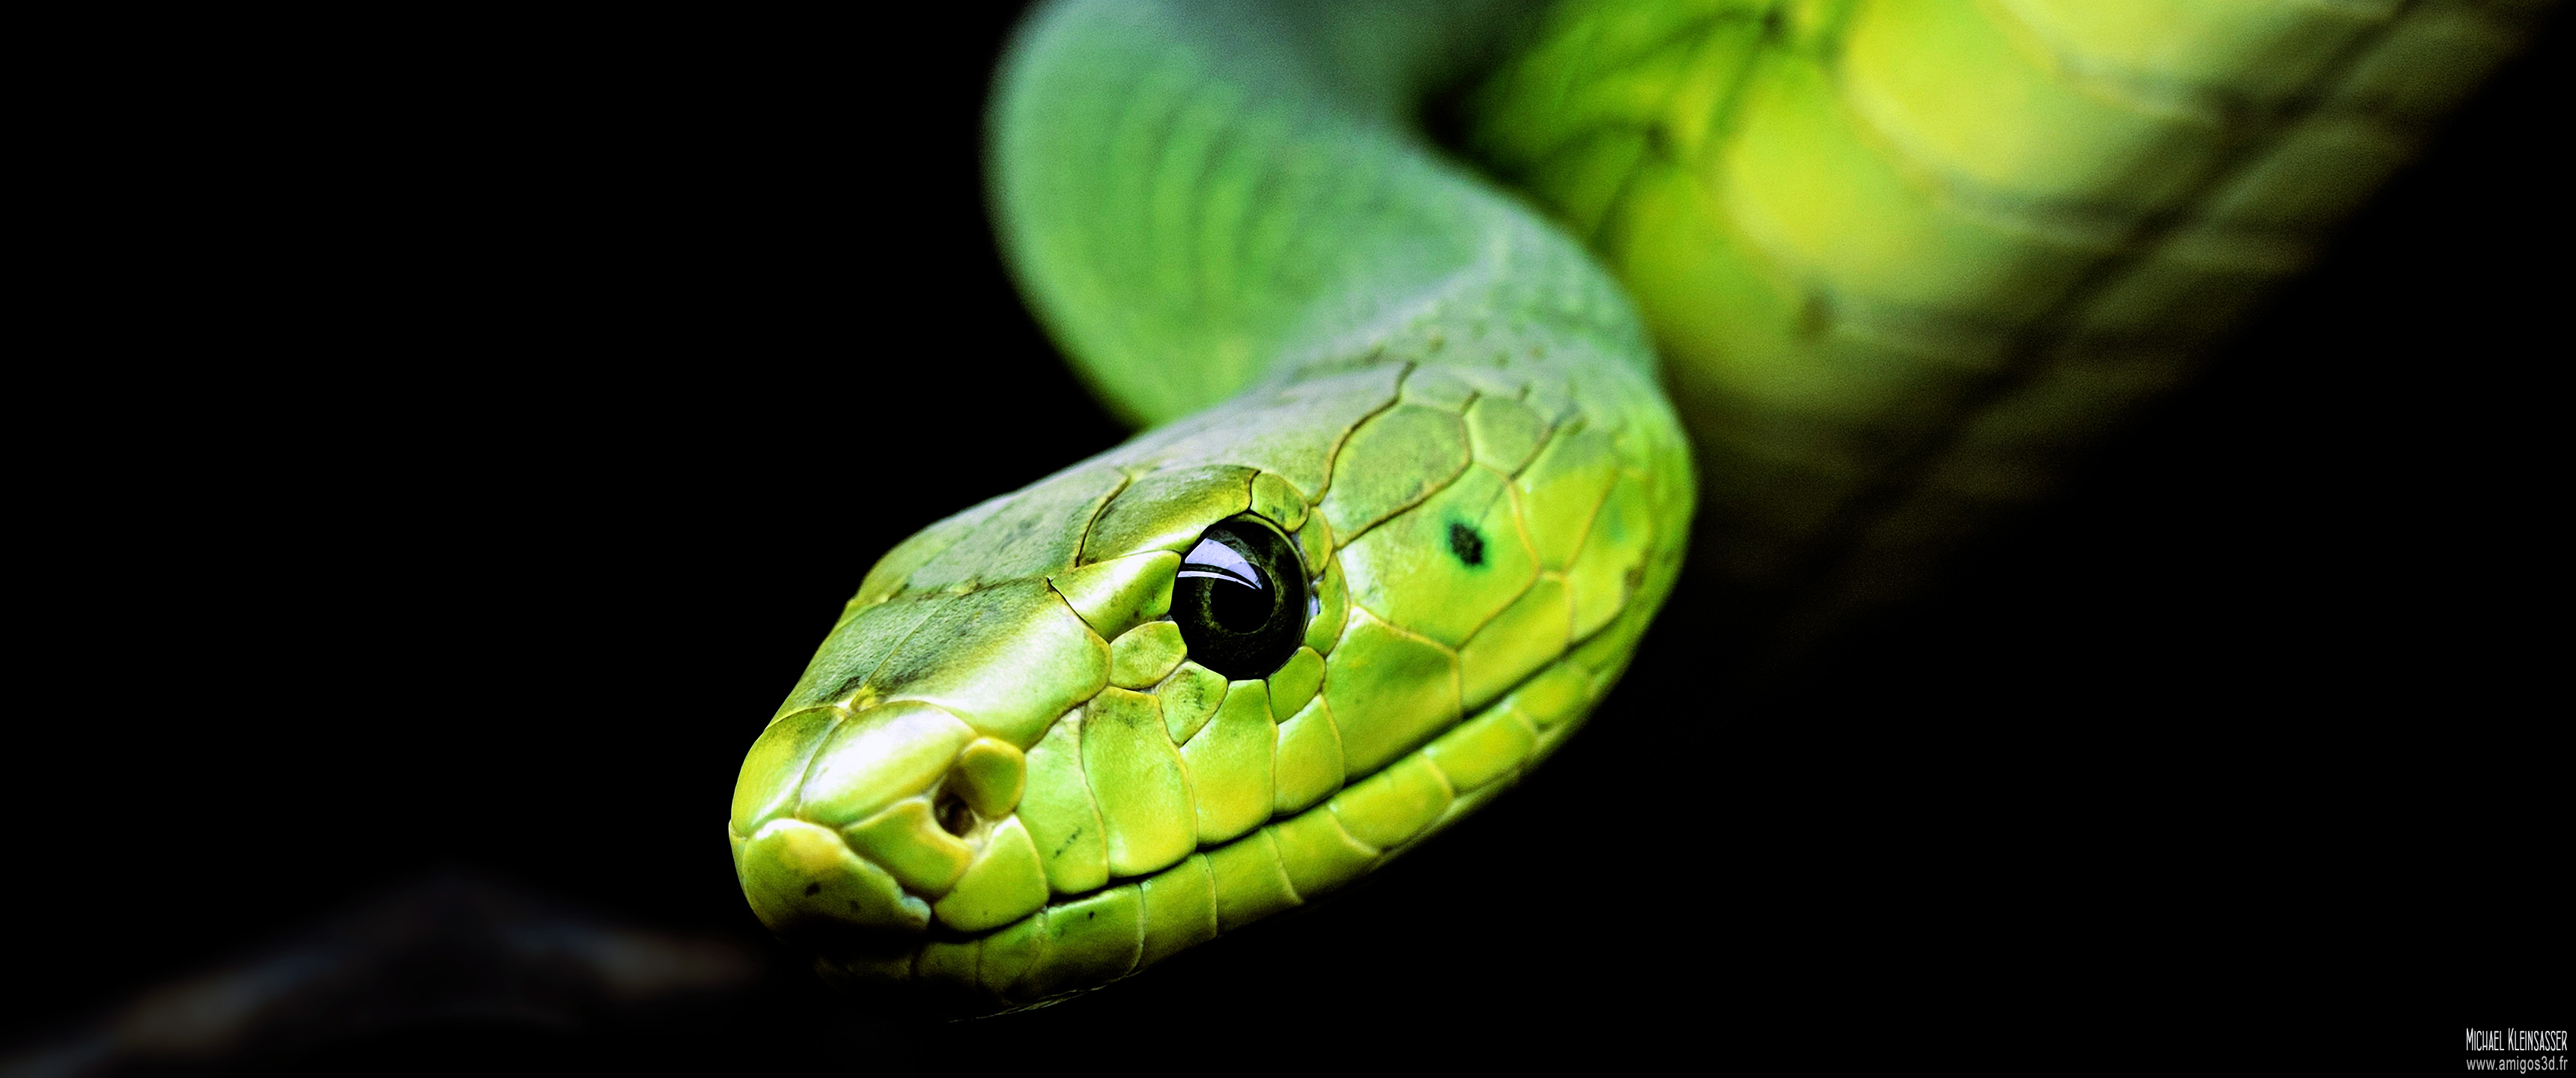 191-snake